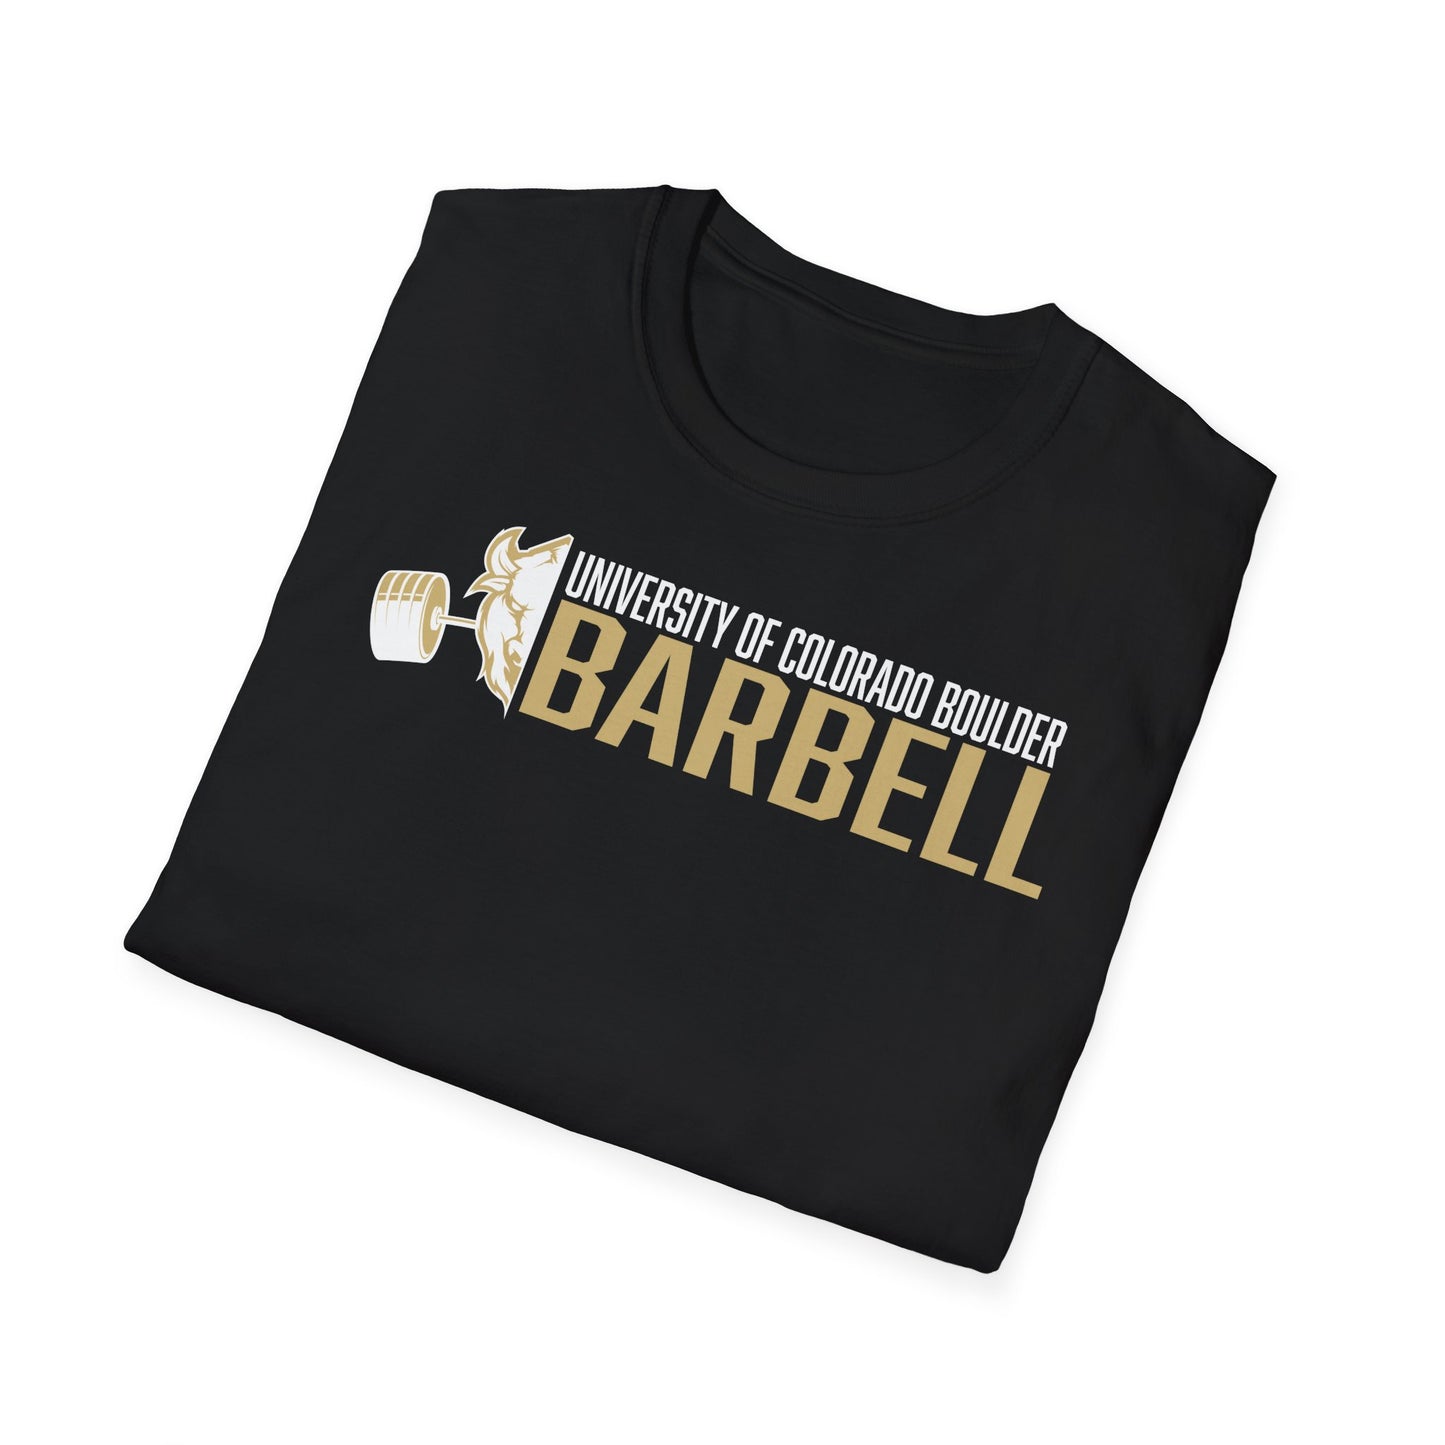 CU Barbell Core Values T-Shirt: Discipline